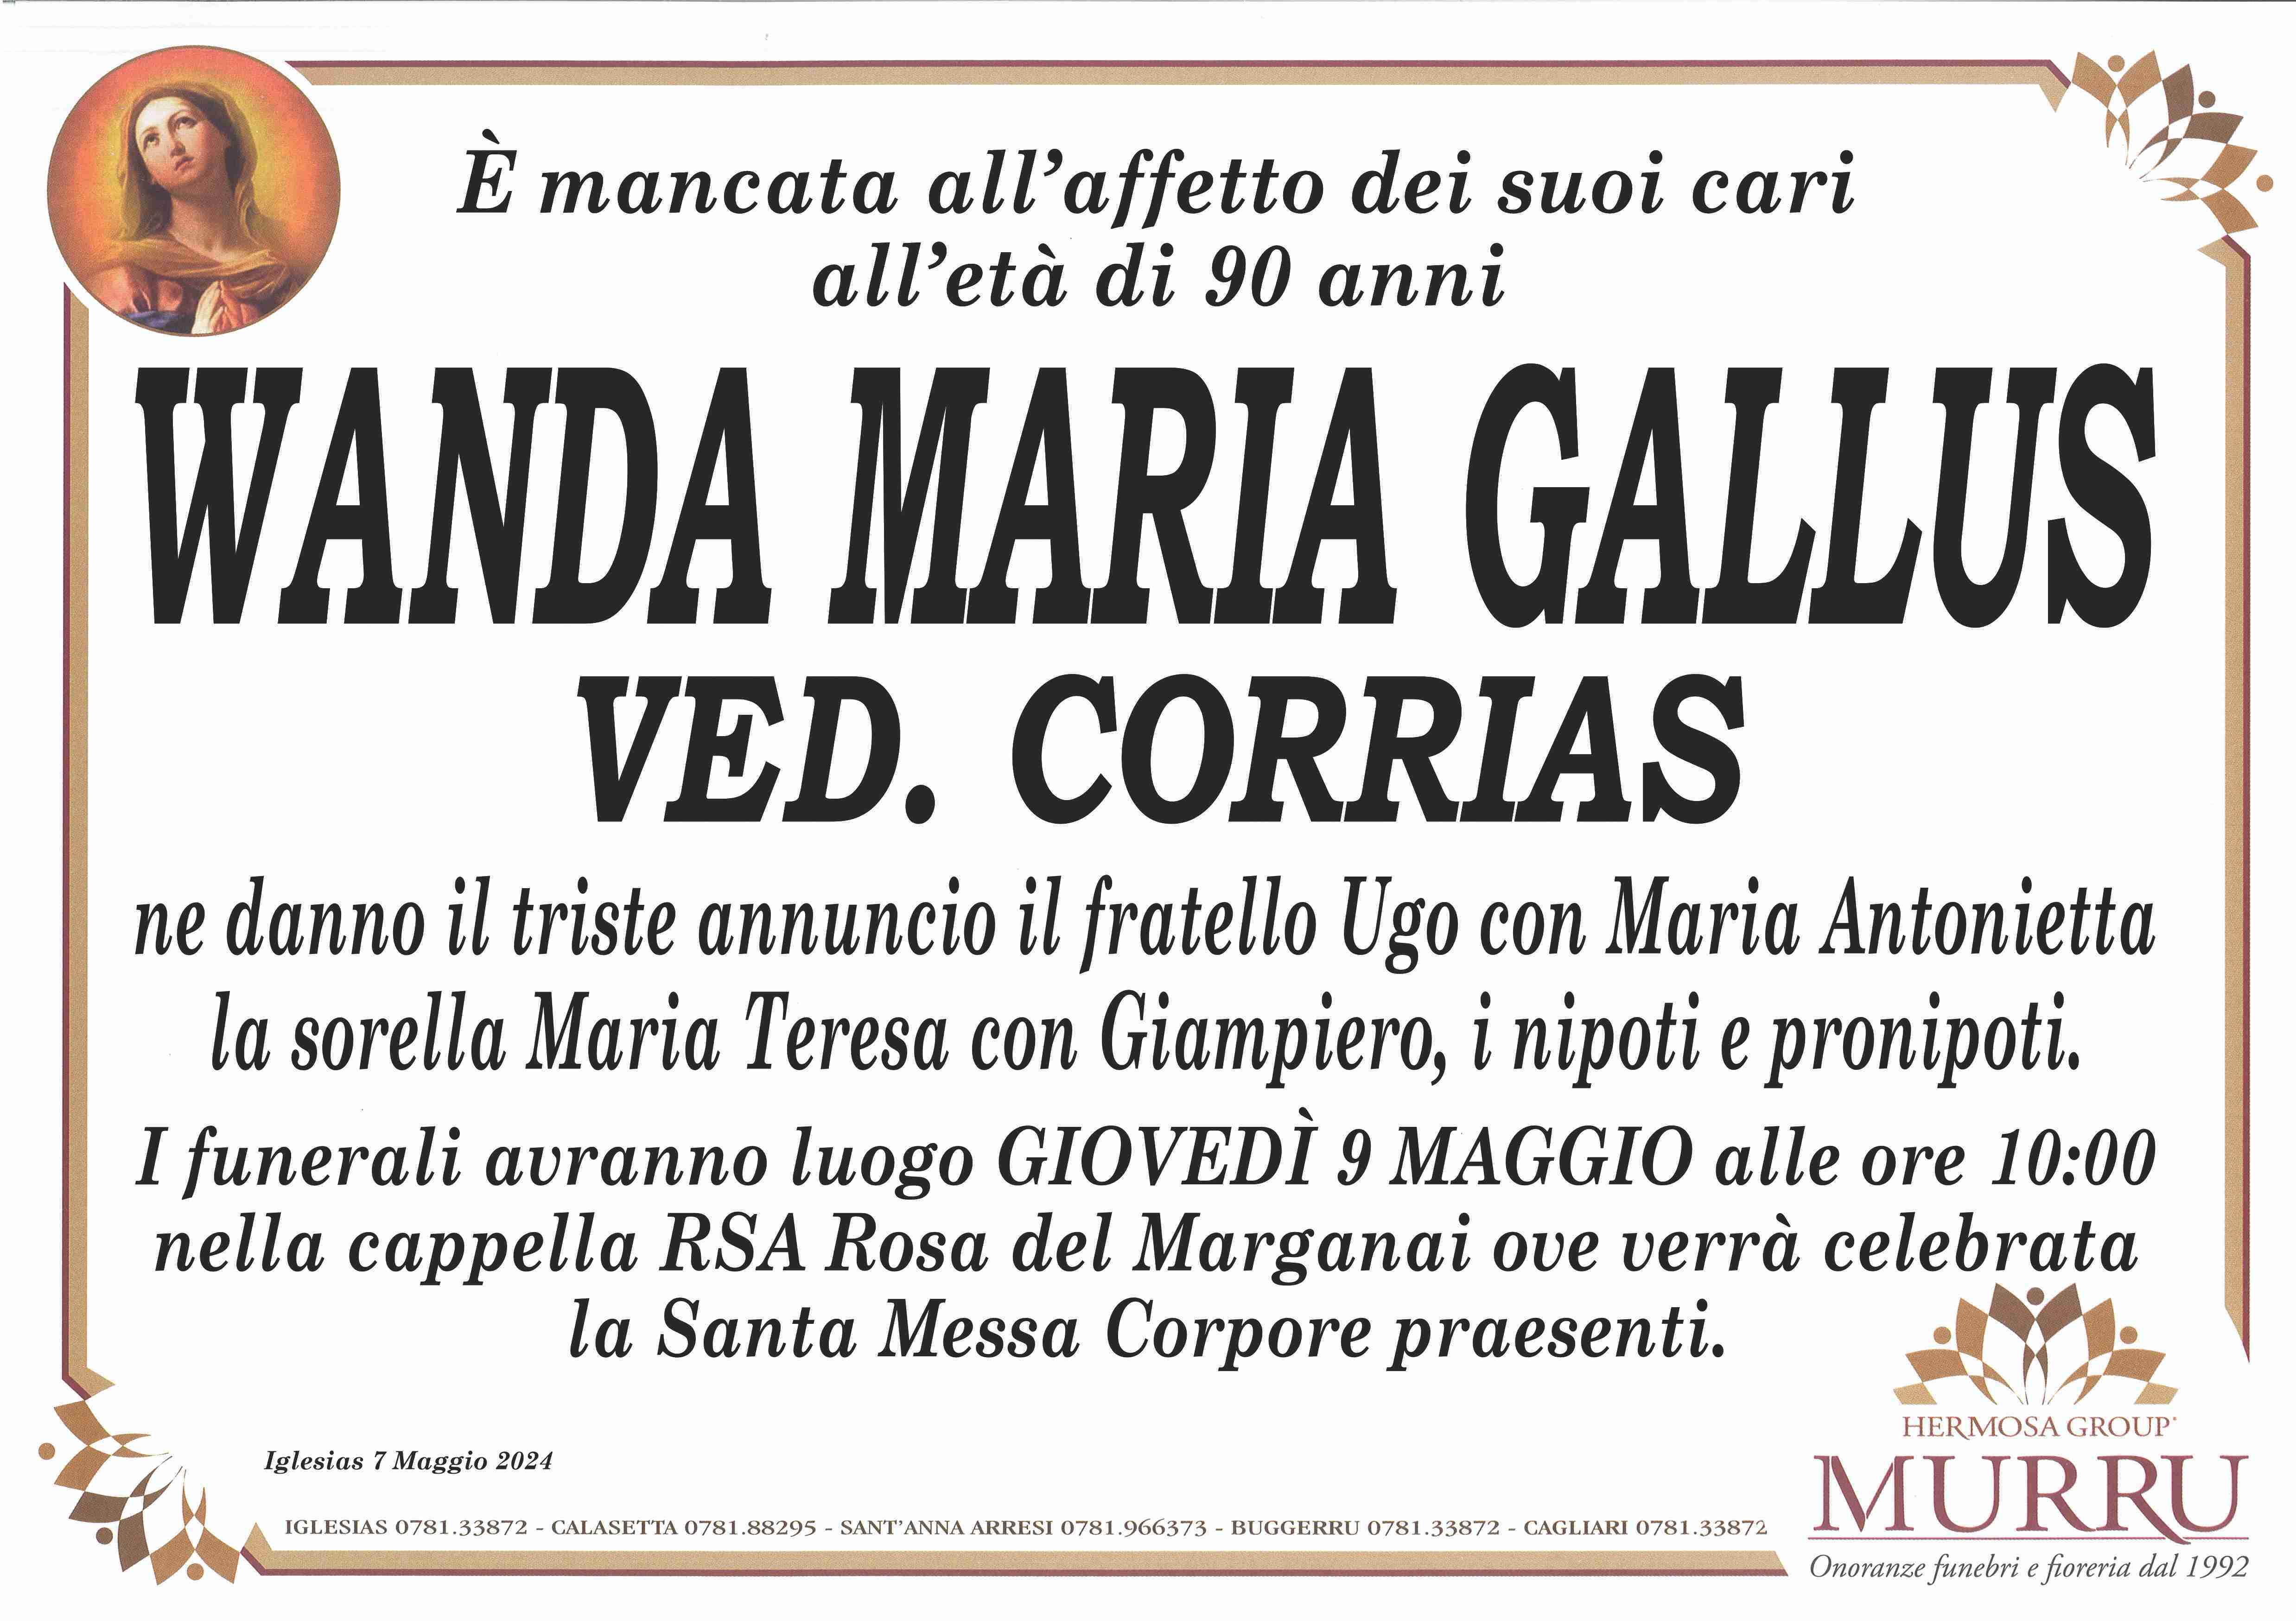 Wanda Maria Gallus